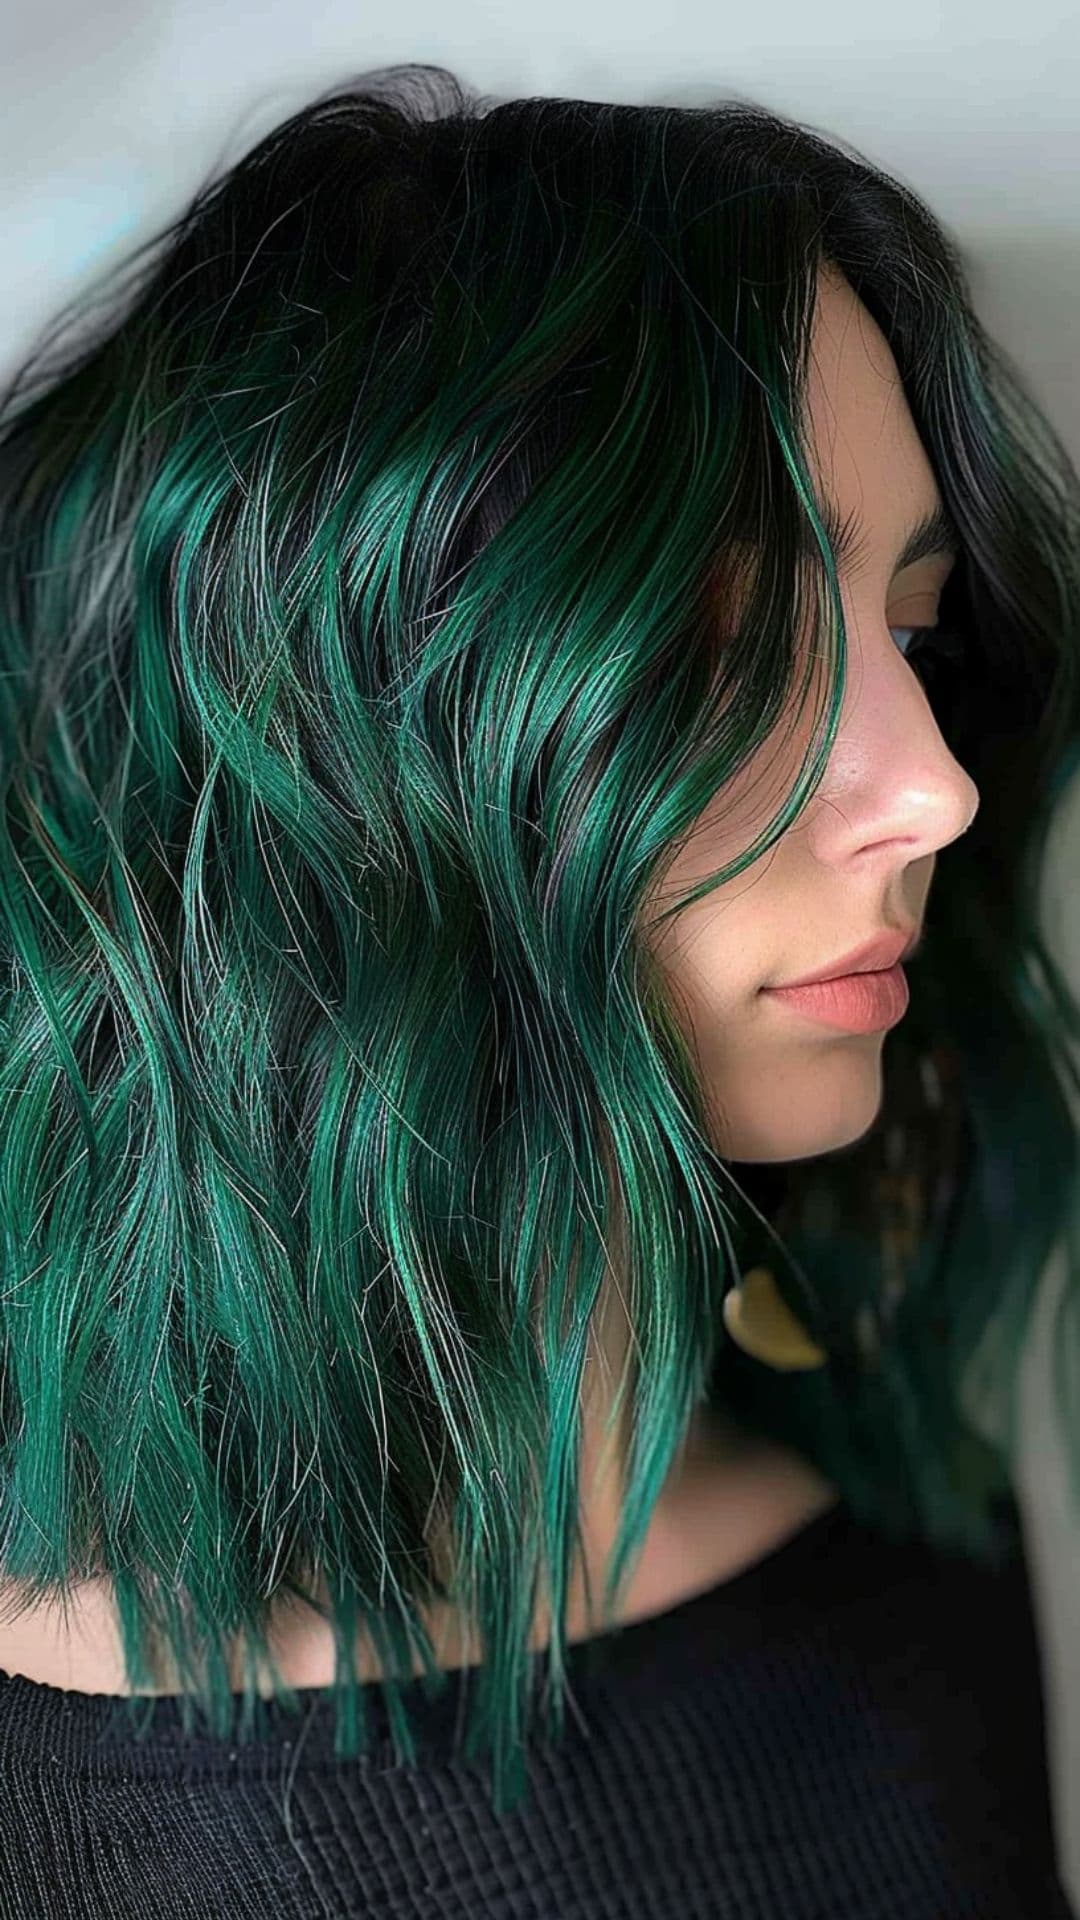 A woman a rich, dark green hair.